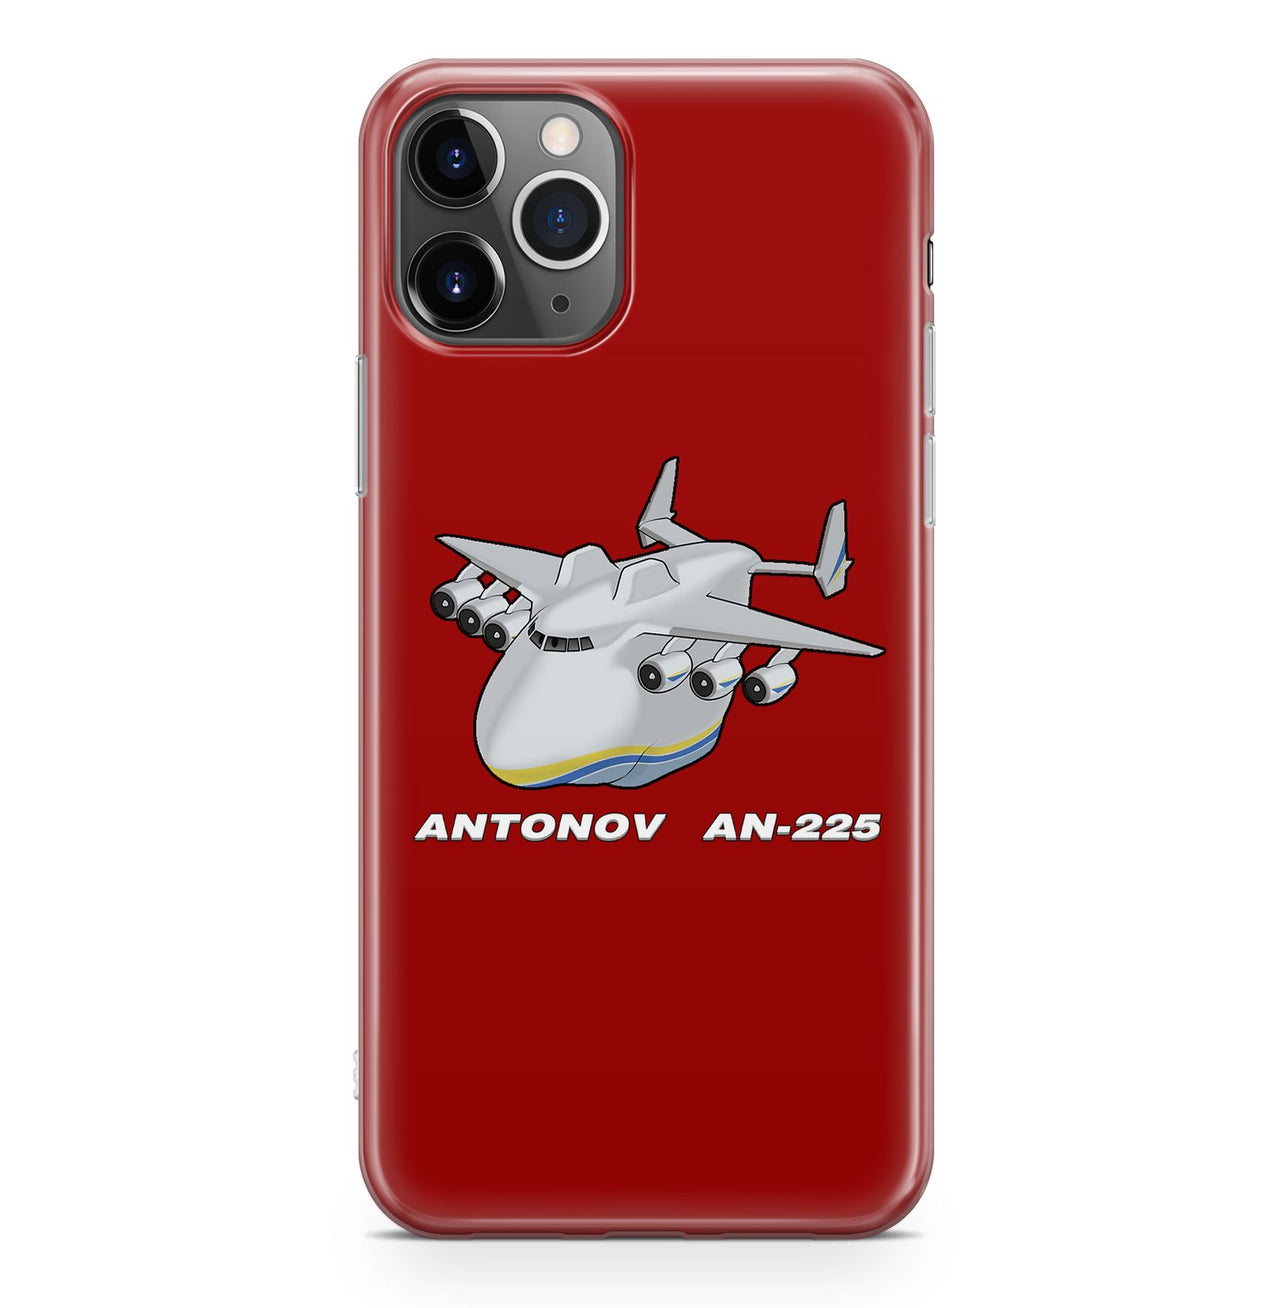 Antonov AN-225 (29) Designed iPhone Cases